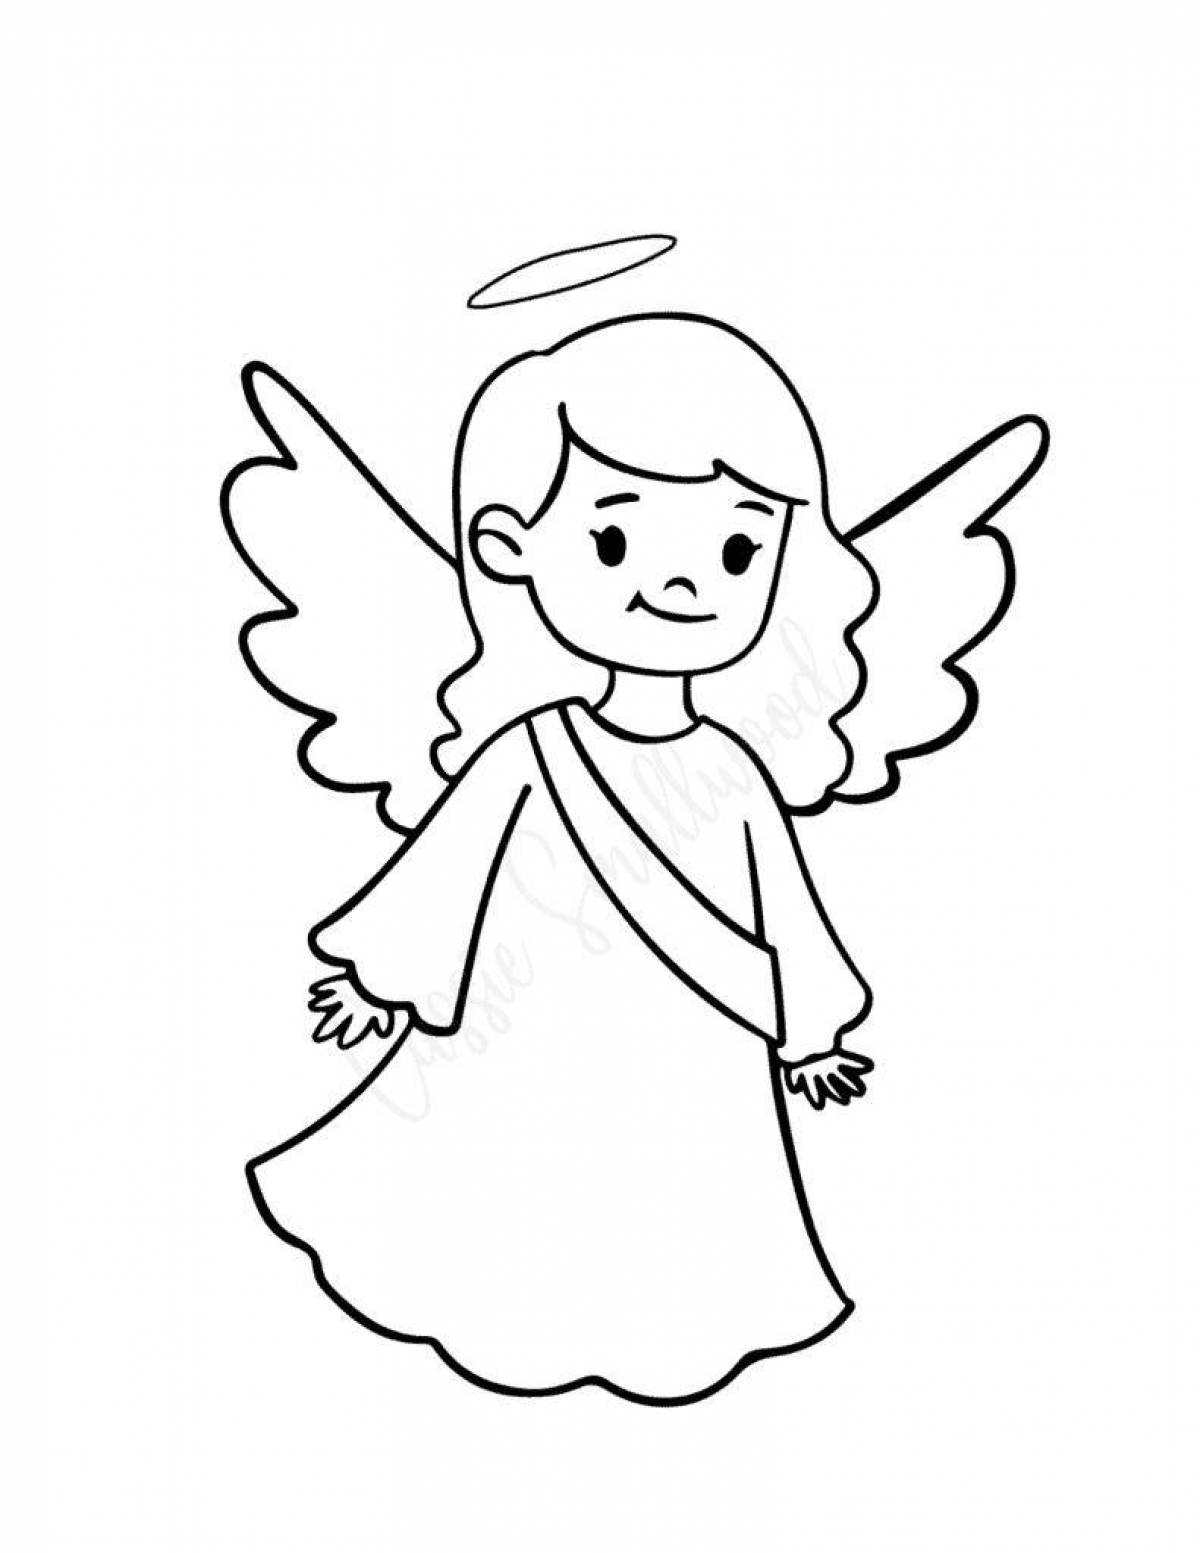 Веселая раскраска ангелочек для детей 3-4 лет